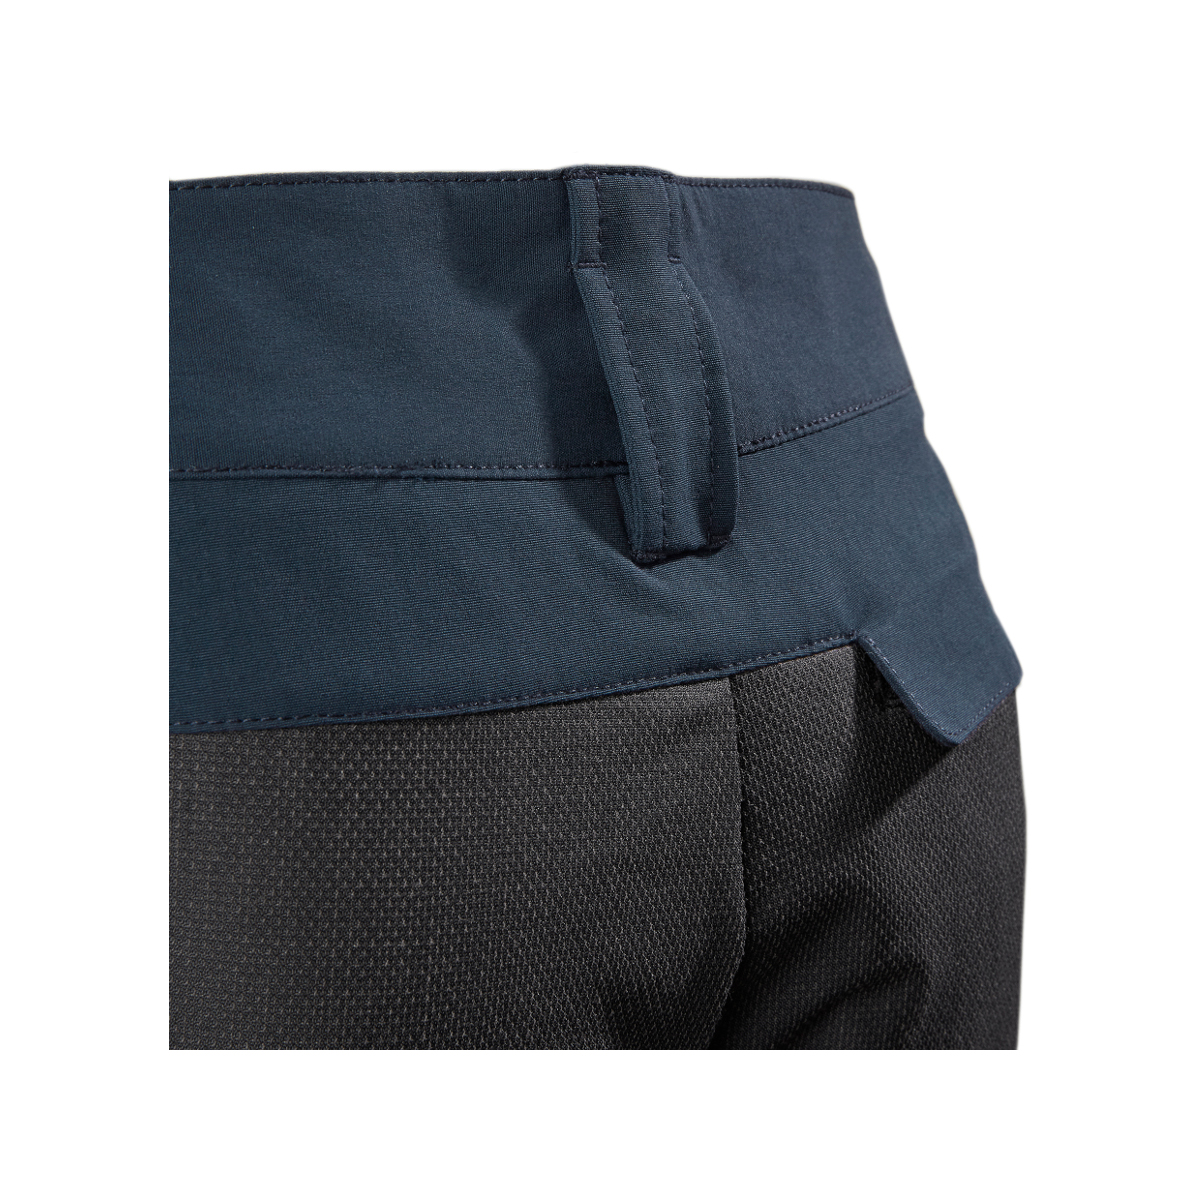 Musto Evolution Performance pantalon de voile 2.0 homme bleu marine, taille 30